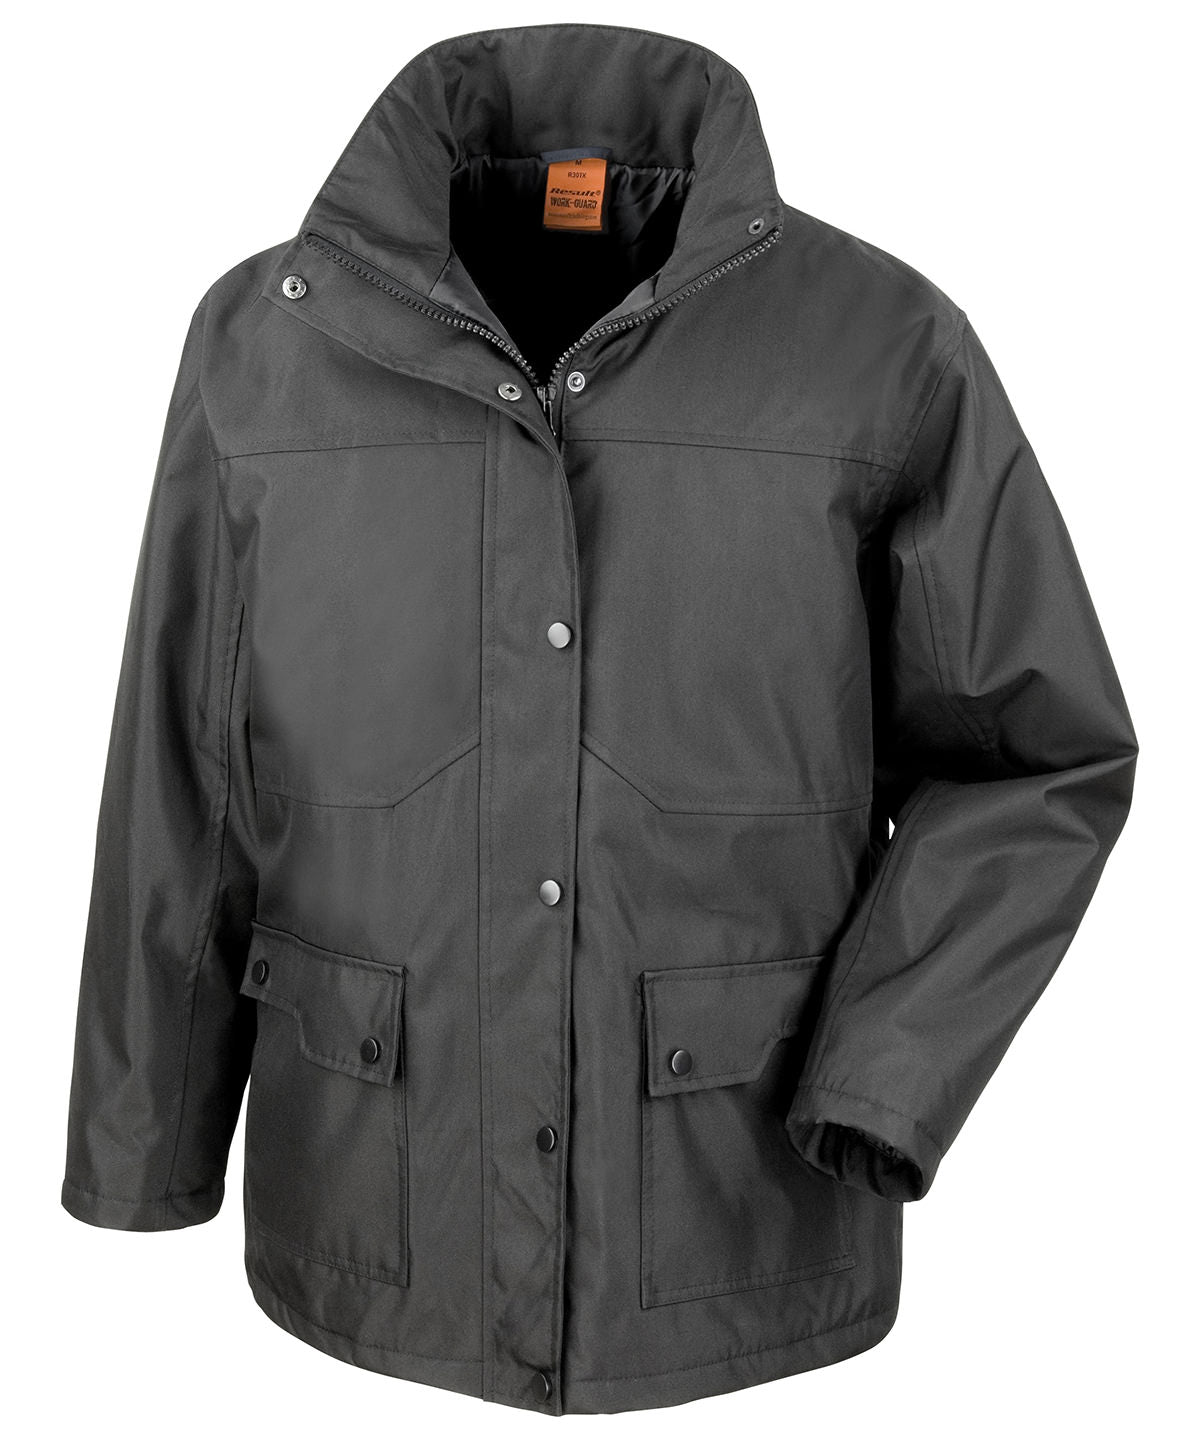 Personalised Jackets - Black Result Workguard Platinum manager's jacket